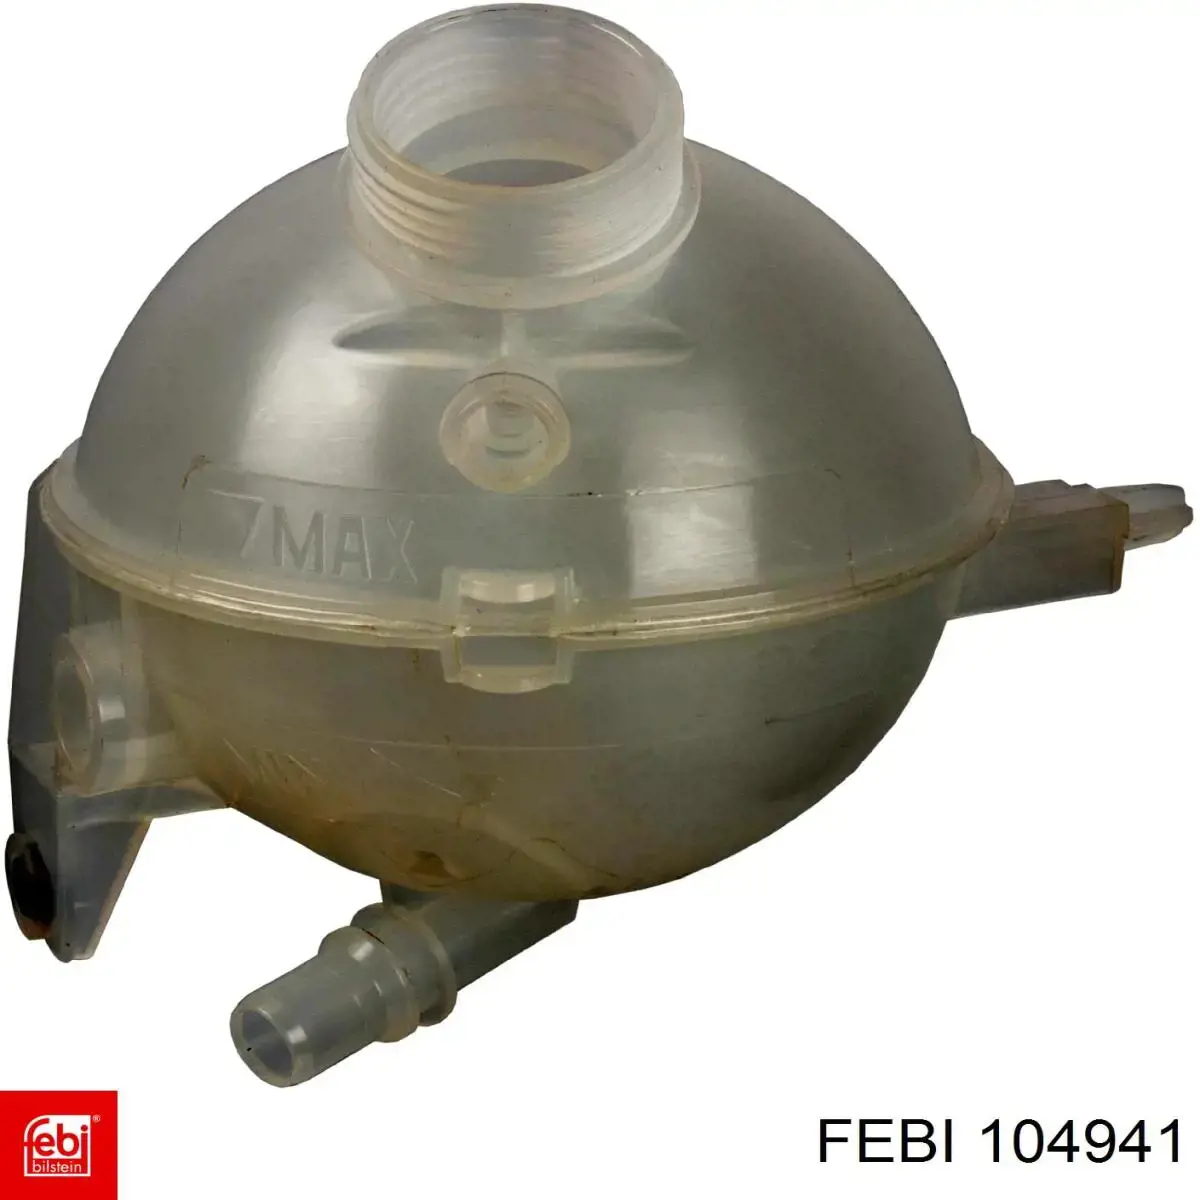 104941 Febi tanque de expansão do sistema de esfriamento